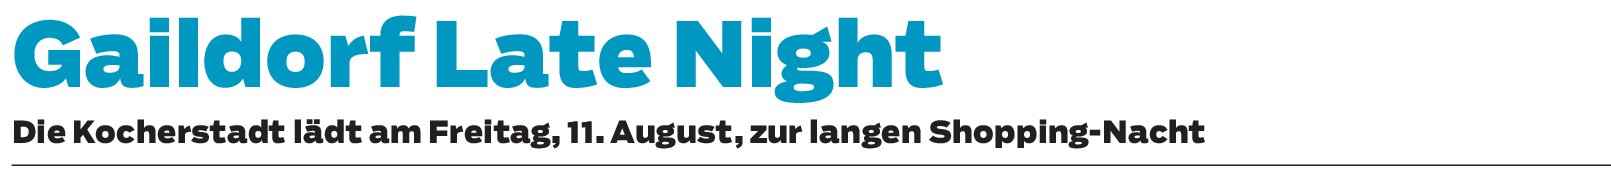 Gaildorf Late Night: Entspannter Einkaufsbummel am Abend